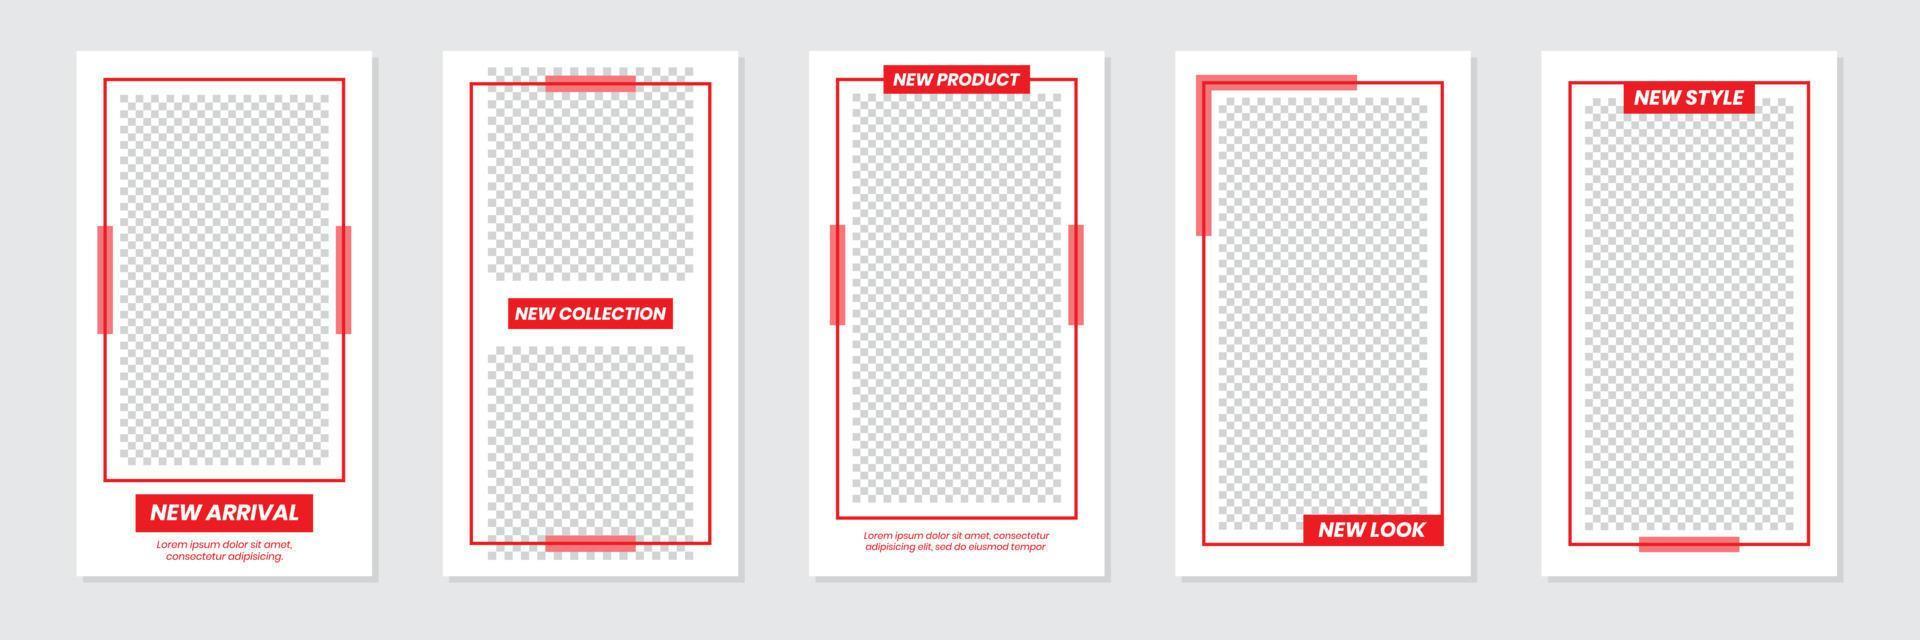 minimalistisk röd design för berättelser för sociala medier vektor